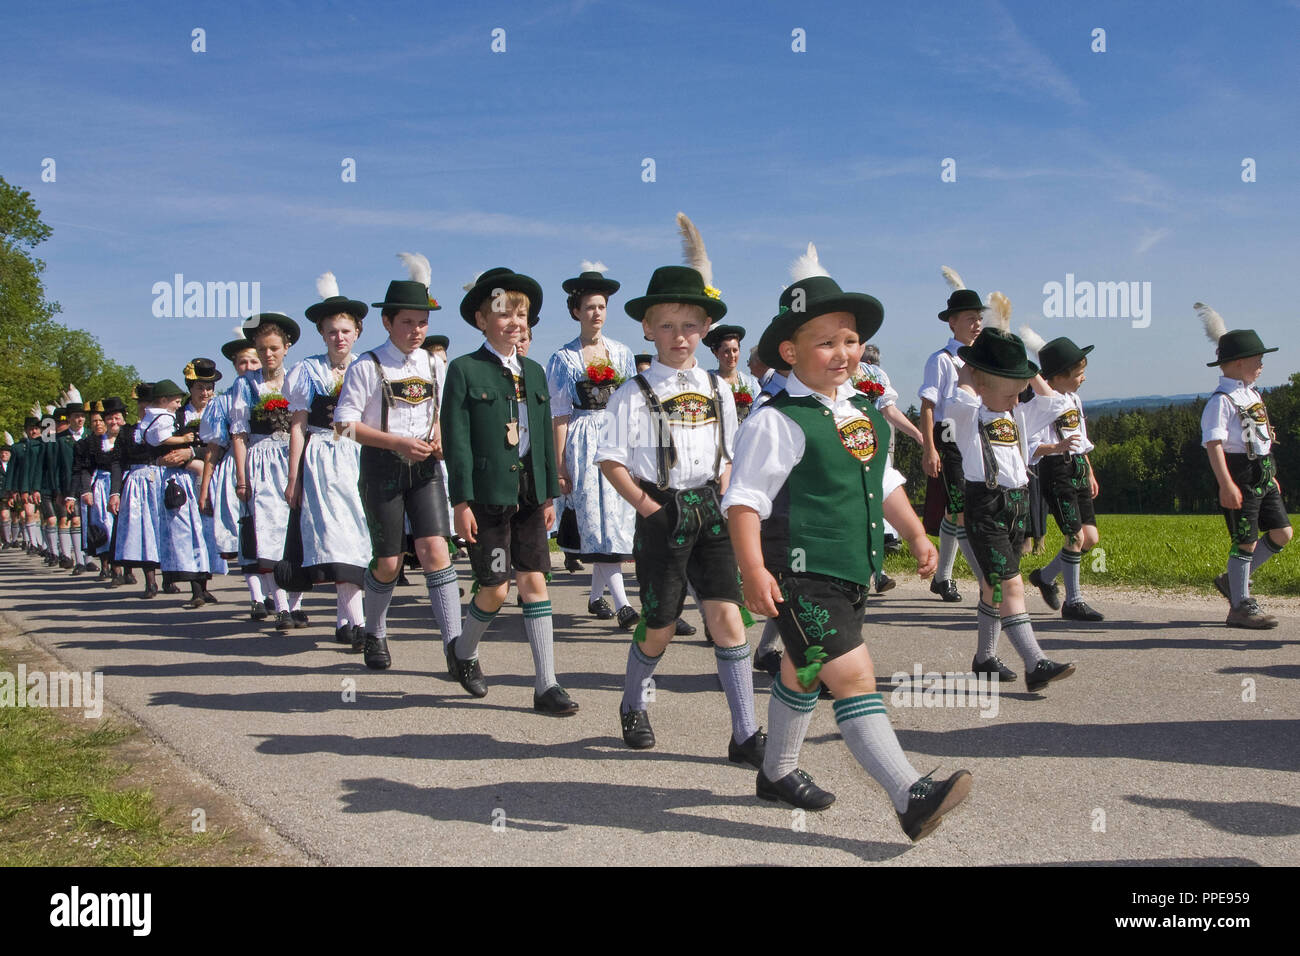 Kinder in der traditionellen Tracht der Trachtenverein (Tracht club) Tiefenthaler Weildorf in einem Festzug. Stockfoto